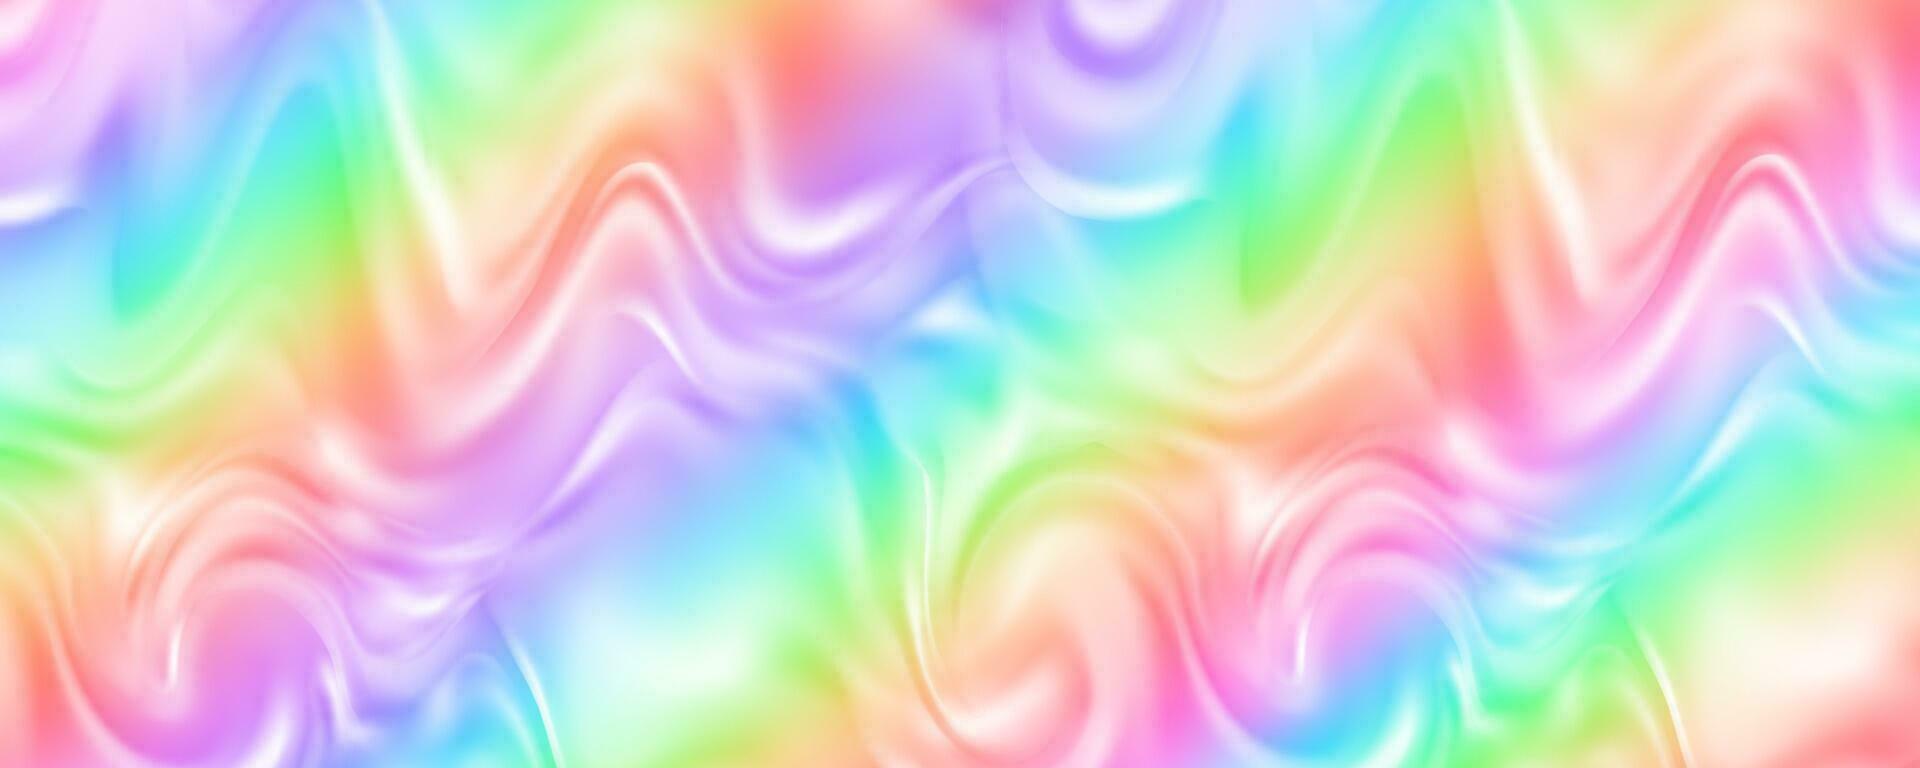 regenboog achtergrond met ombre golven van vloeistof. abstract pastel helling behang met helder levendig kleuren. vector eenhoorn holografische achtergrond.